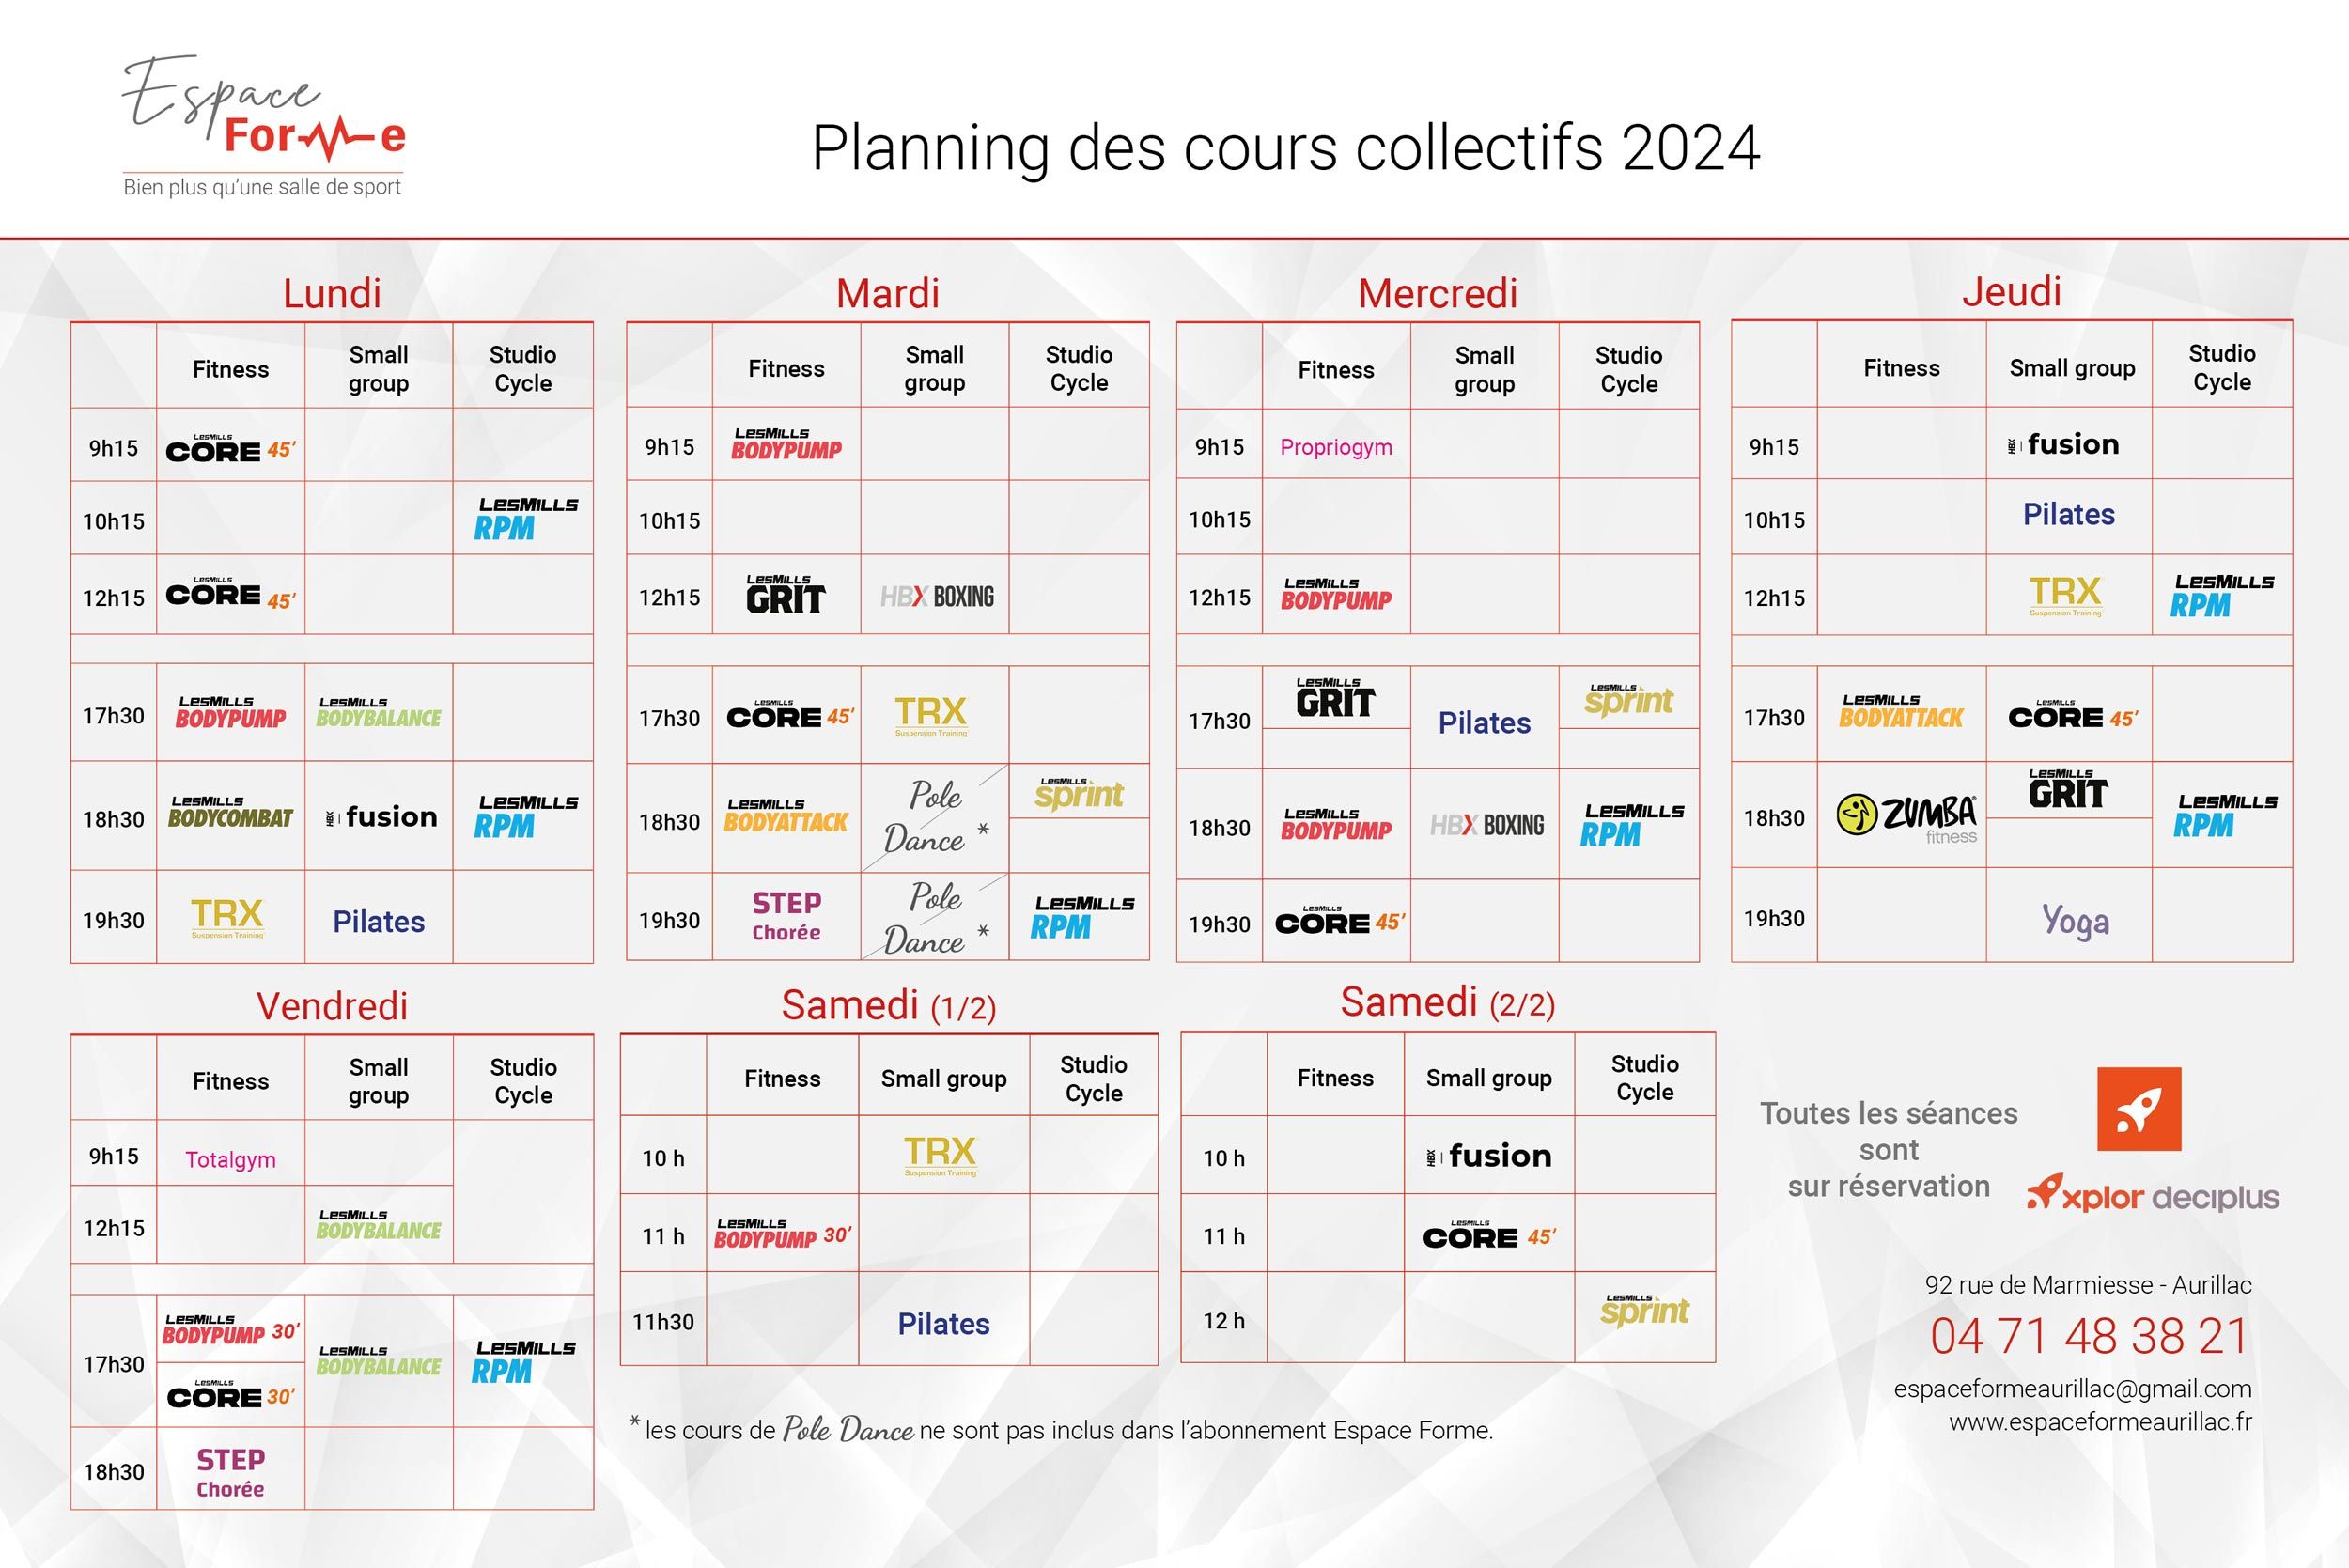 Planning des cours collectifs proposés par la salle de sport Espace Forme Aurillac dans le Cantal depuis janvier 2024